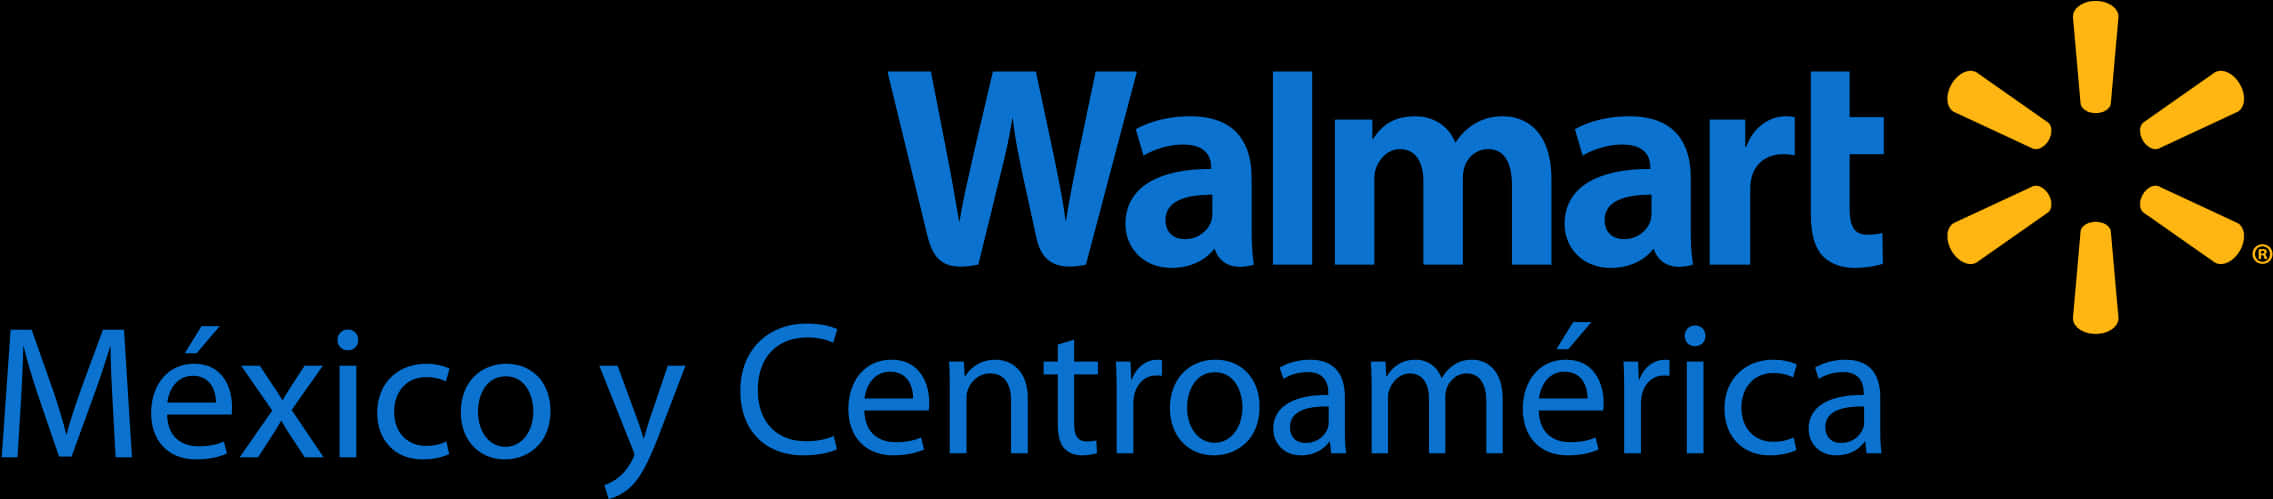 Walmart Mexico Centroamerica Logo PNG